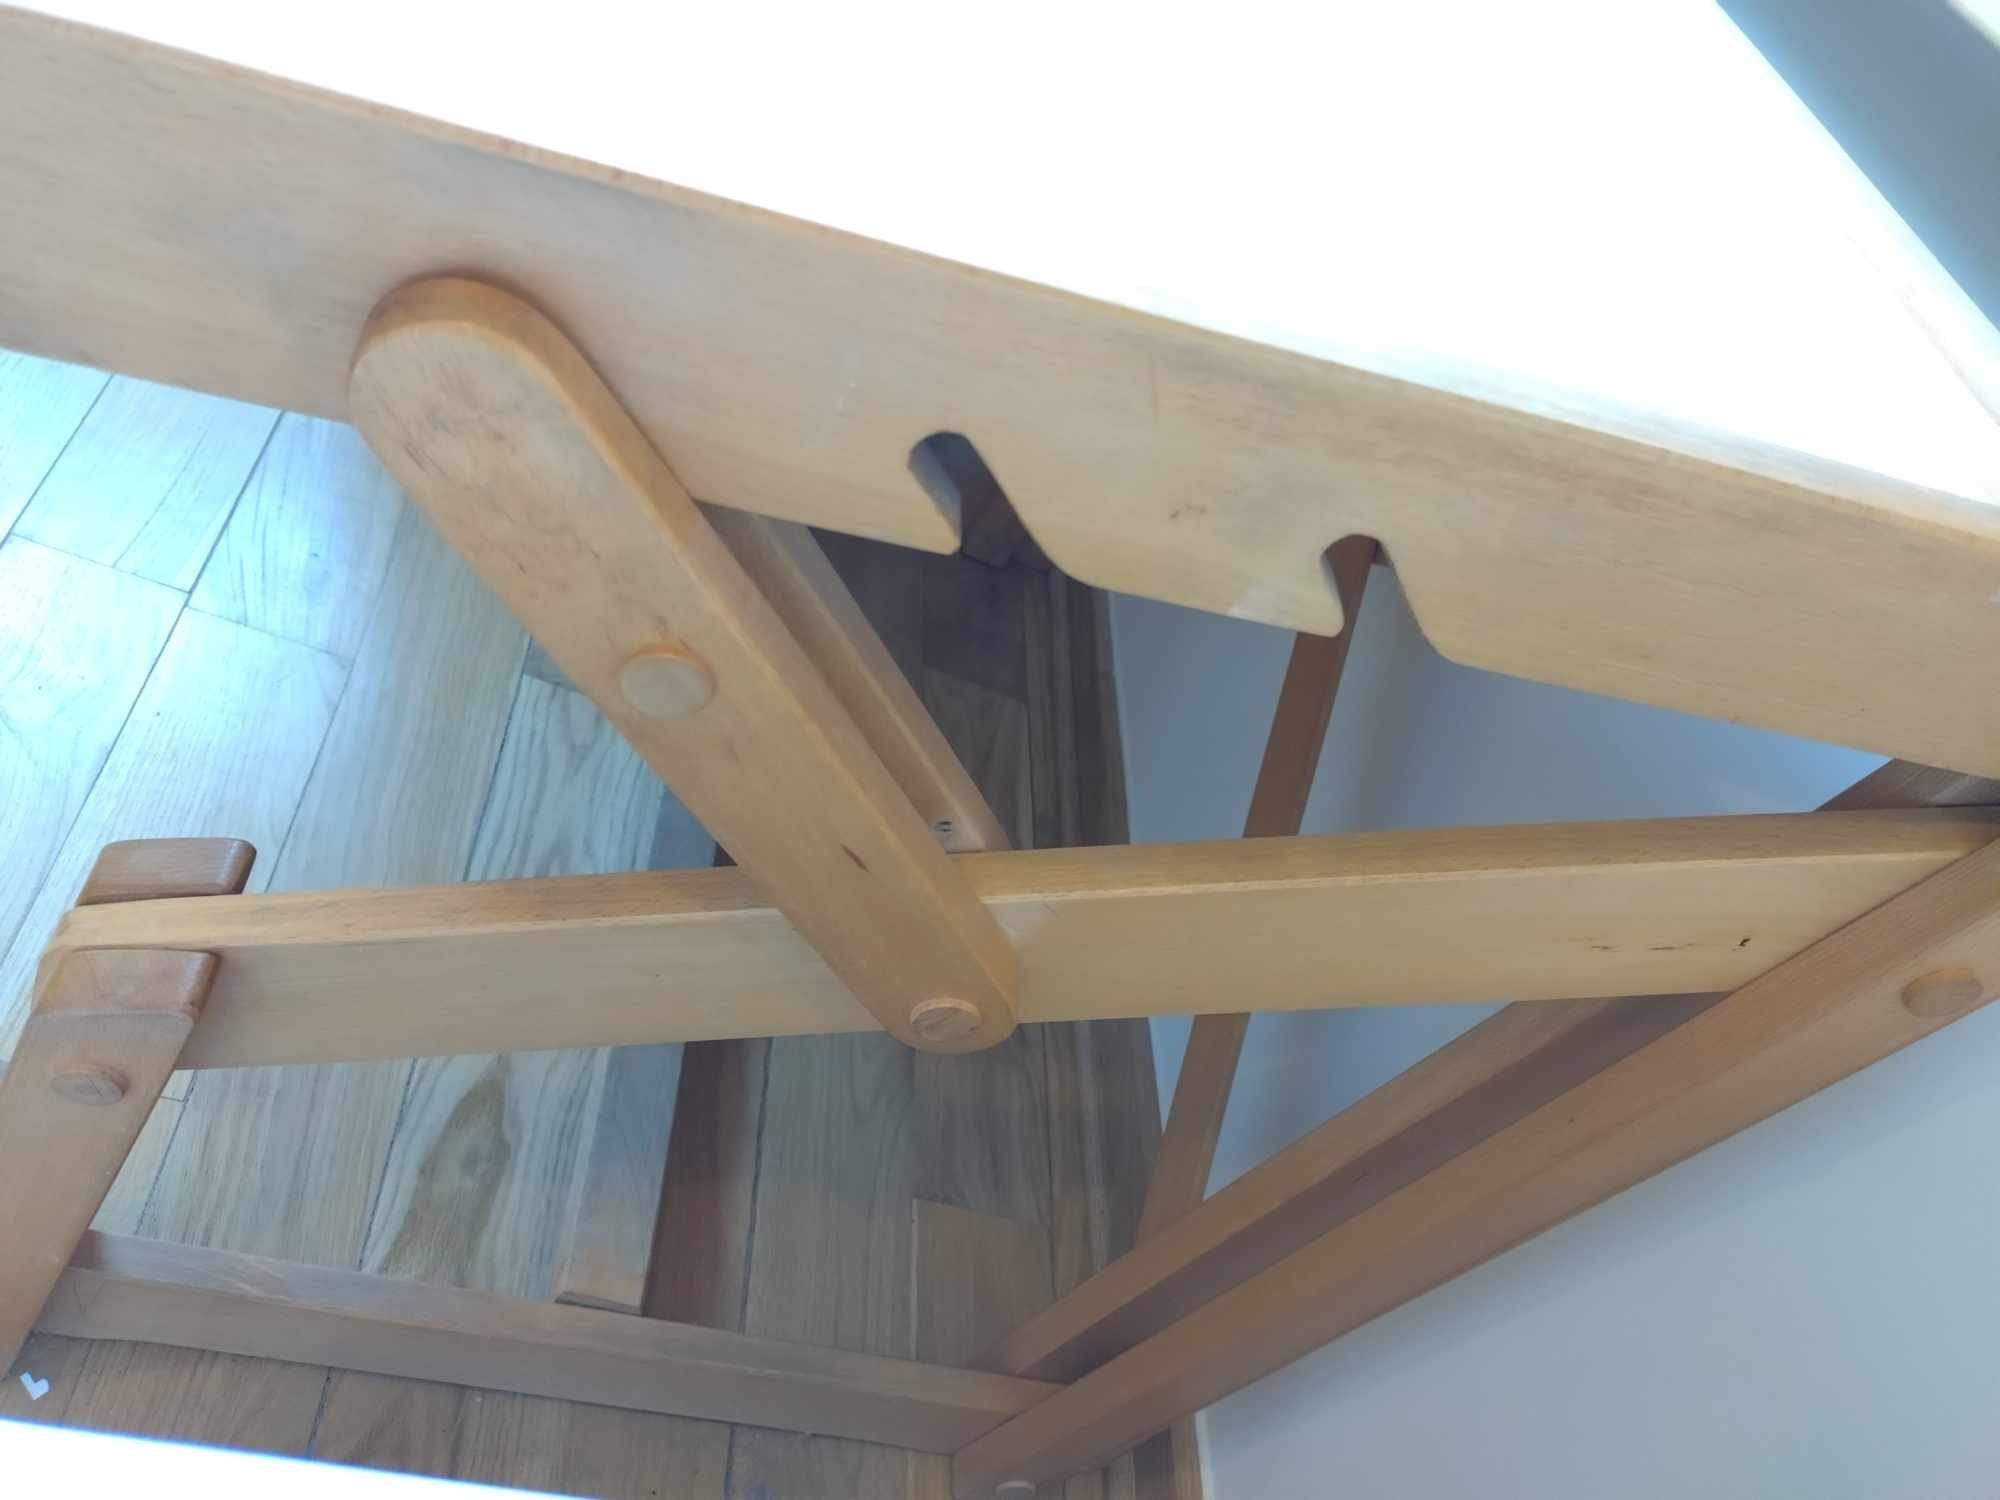 Drewniane biurko kreślarskie vintage architekt